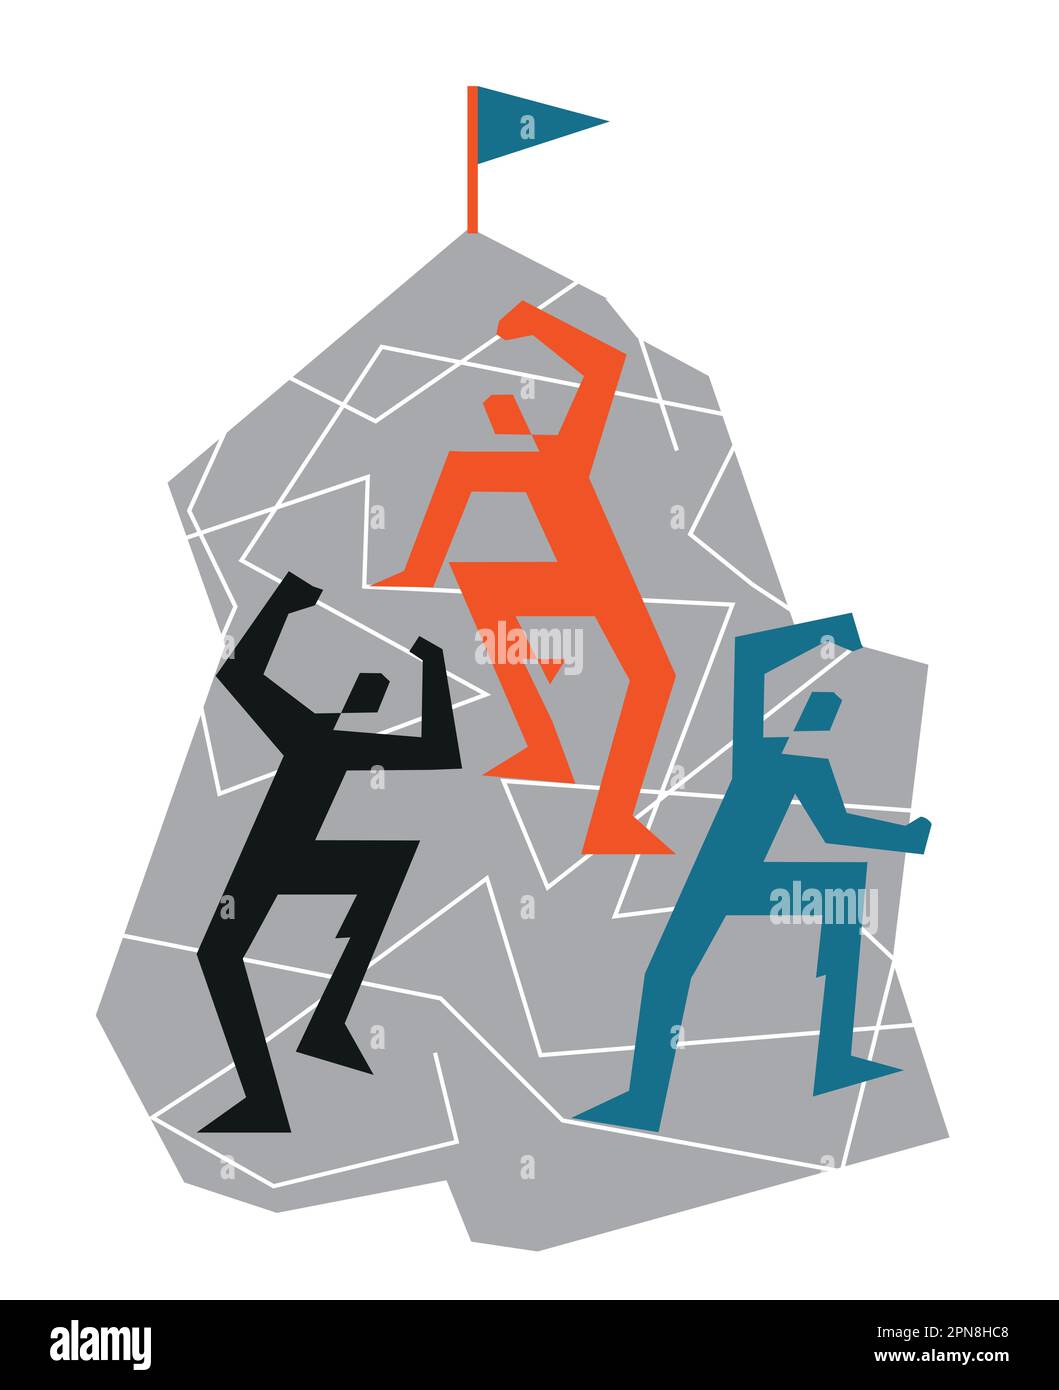 Drei Kletterer an einer Felswand. Geometrisch stilisierte Darstellung der Bergsteigeraktivitäten. Isoliert auf weißem Hintergrund. Vektor verfügbar. Stock Vektor